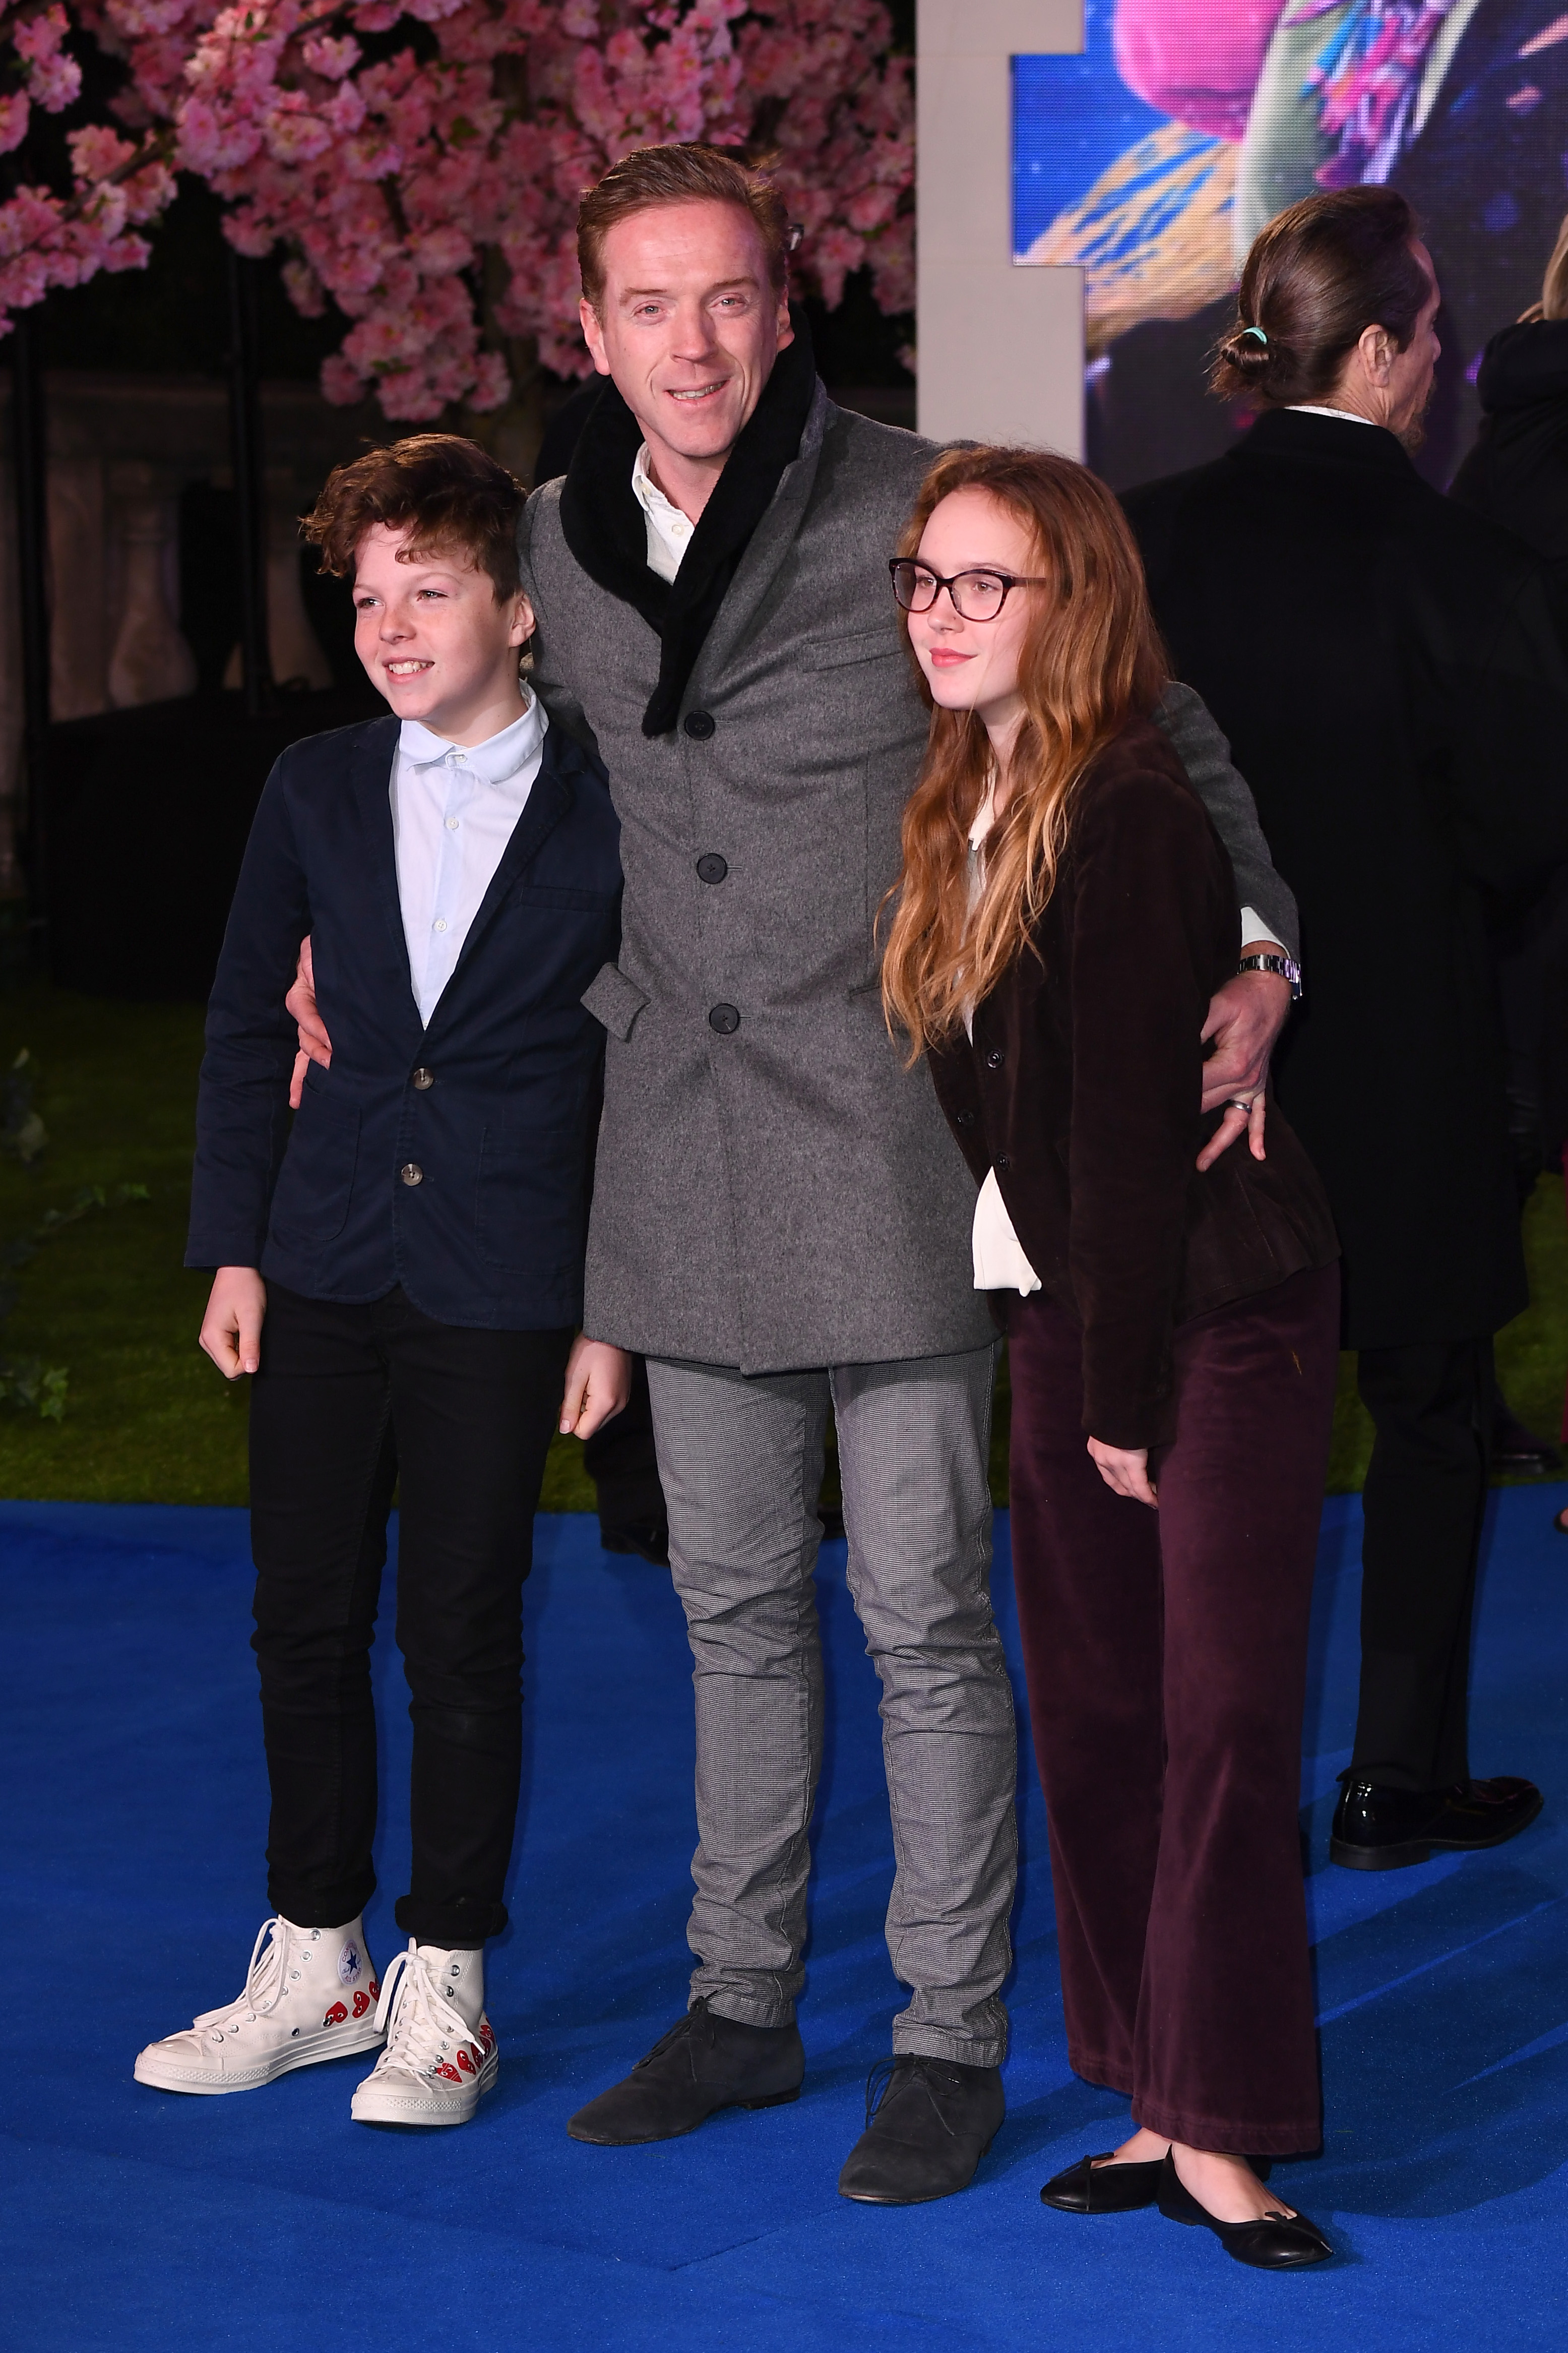 Damian Lewis, sus hijos Gulliver Lewis y Manor McCrory-Lewis asisten al estreno de "Mary Poppins Returns" en el Royal Albert Hall el 12 de diciembre de 2018, en Londres, Inglaterra. | Foto: Getty Images